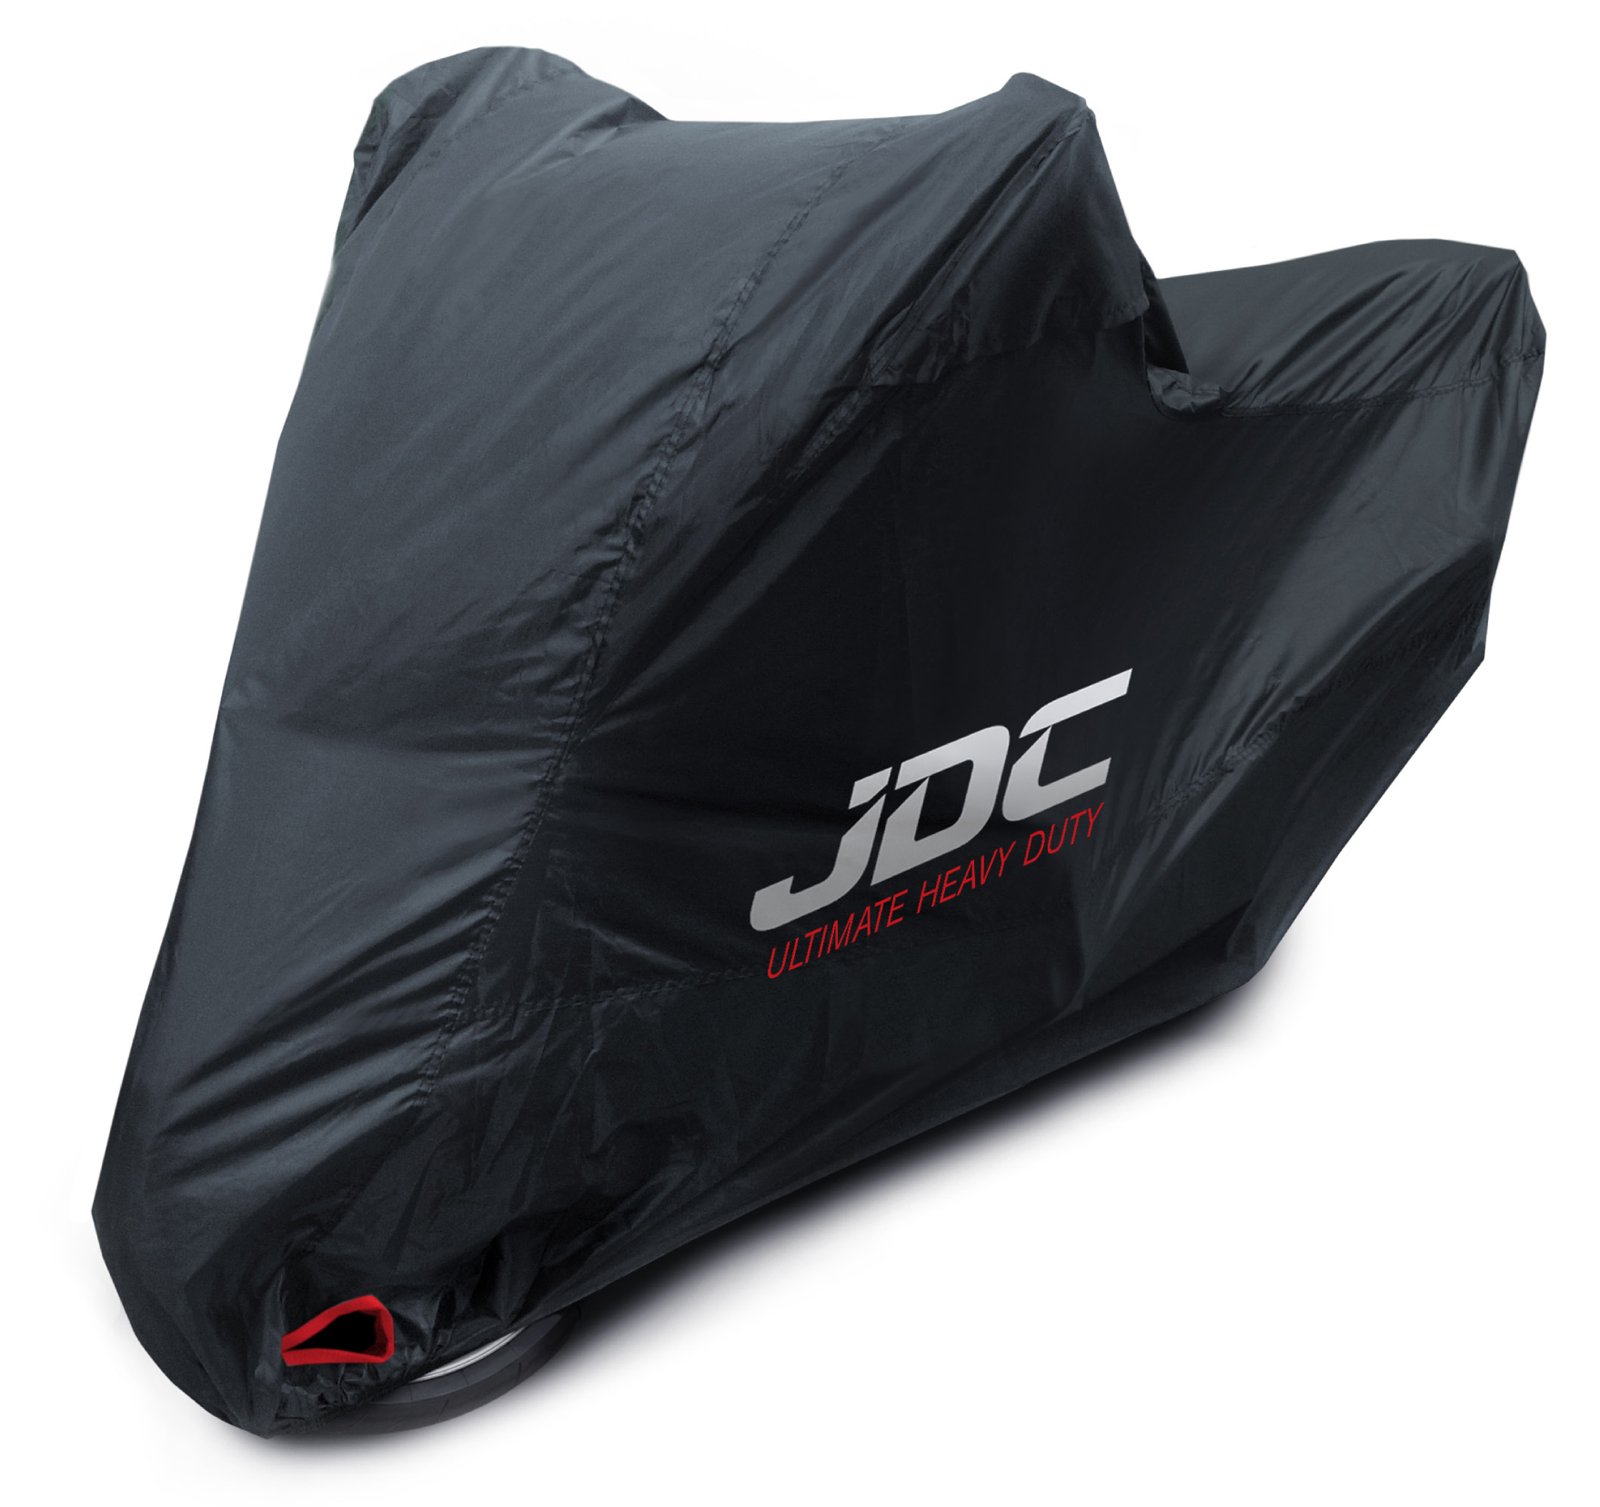 JDC 100% wasserdichte Motorradabdeckung - Ultimate Heavy Duty (Extra strapazierfähig, weiches Futter, hitzebeständig, verschweißte Nähte) - XL Top-Box